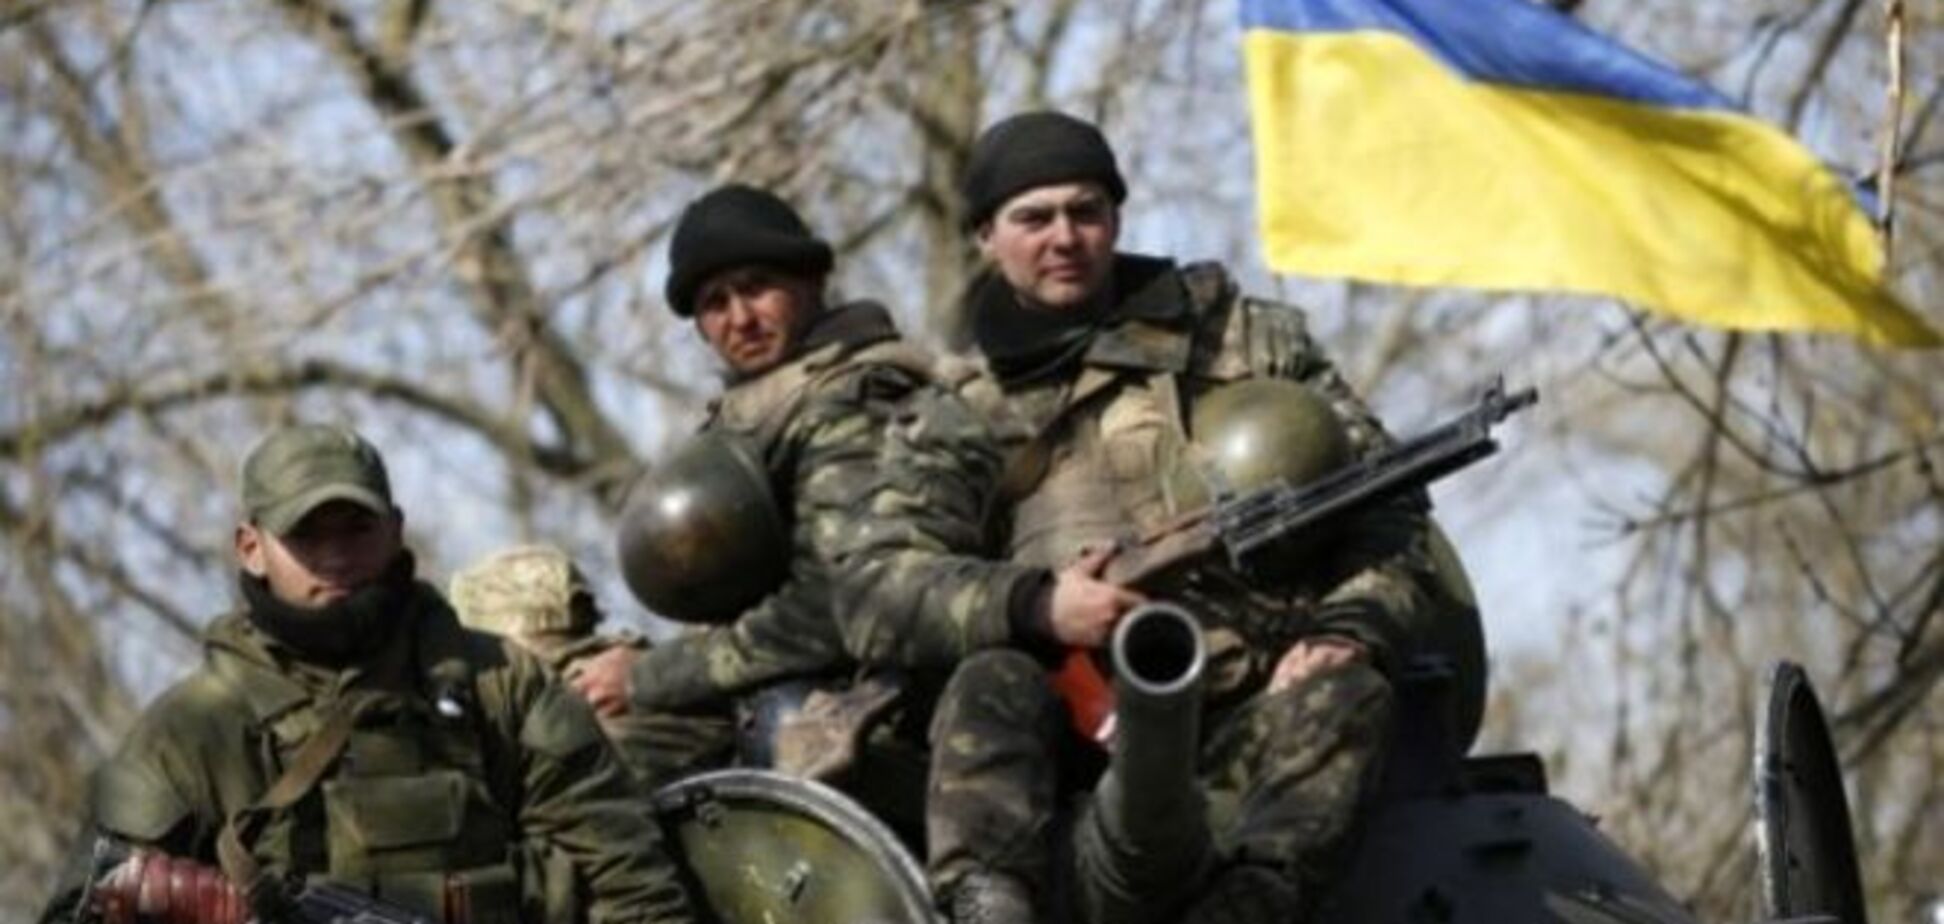 На Донетчине высажен дополнительный десант украинской армии - ДонОГА